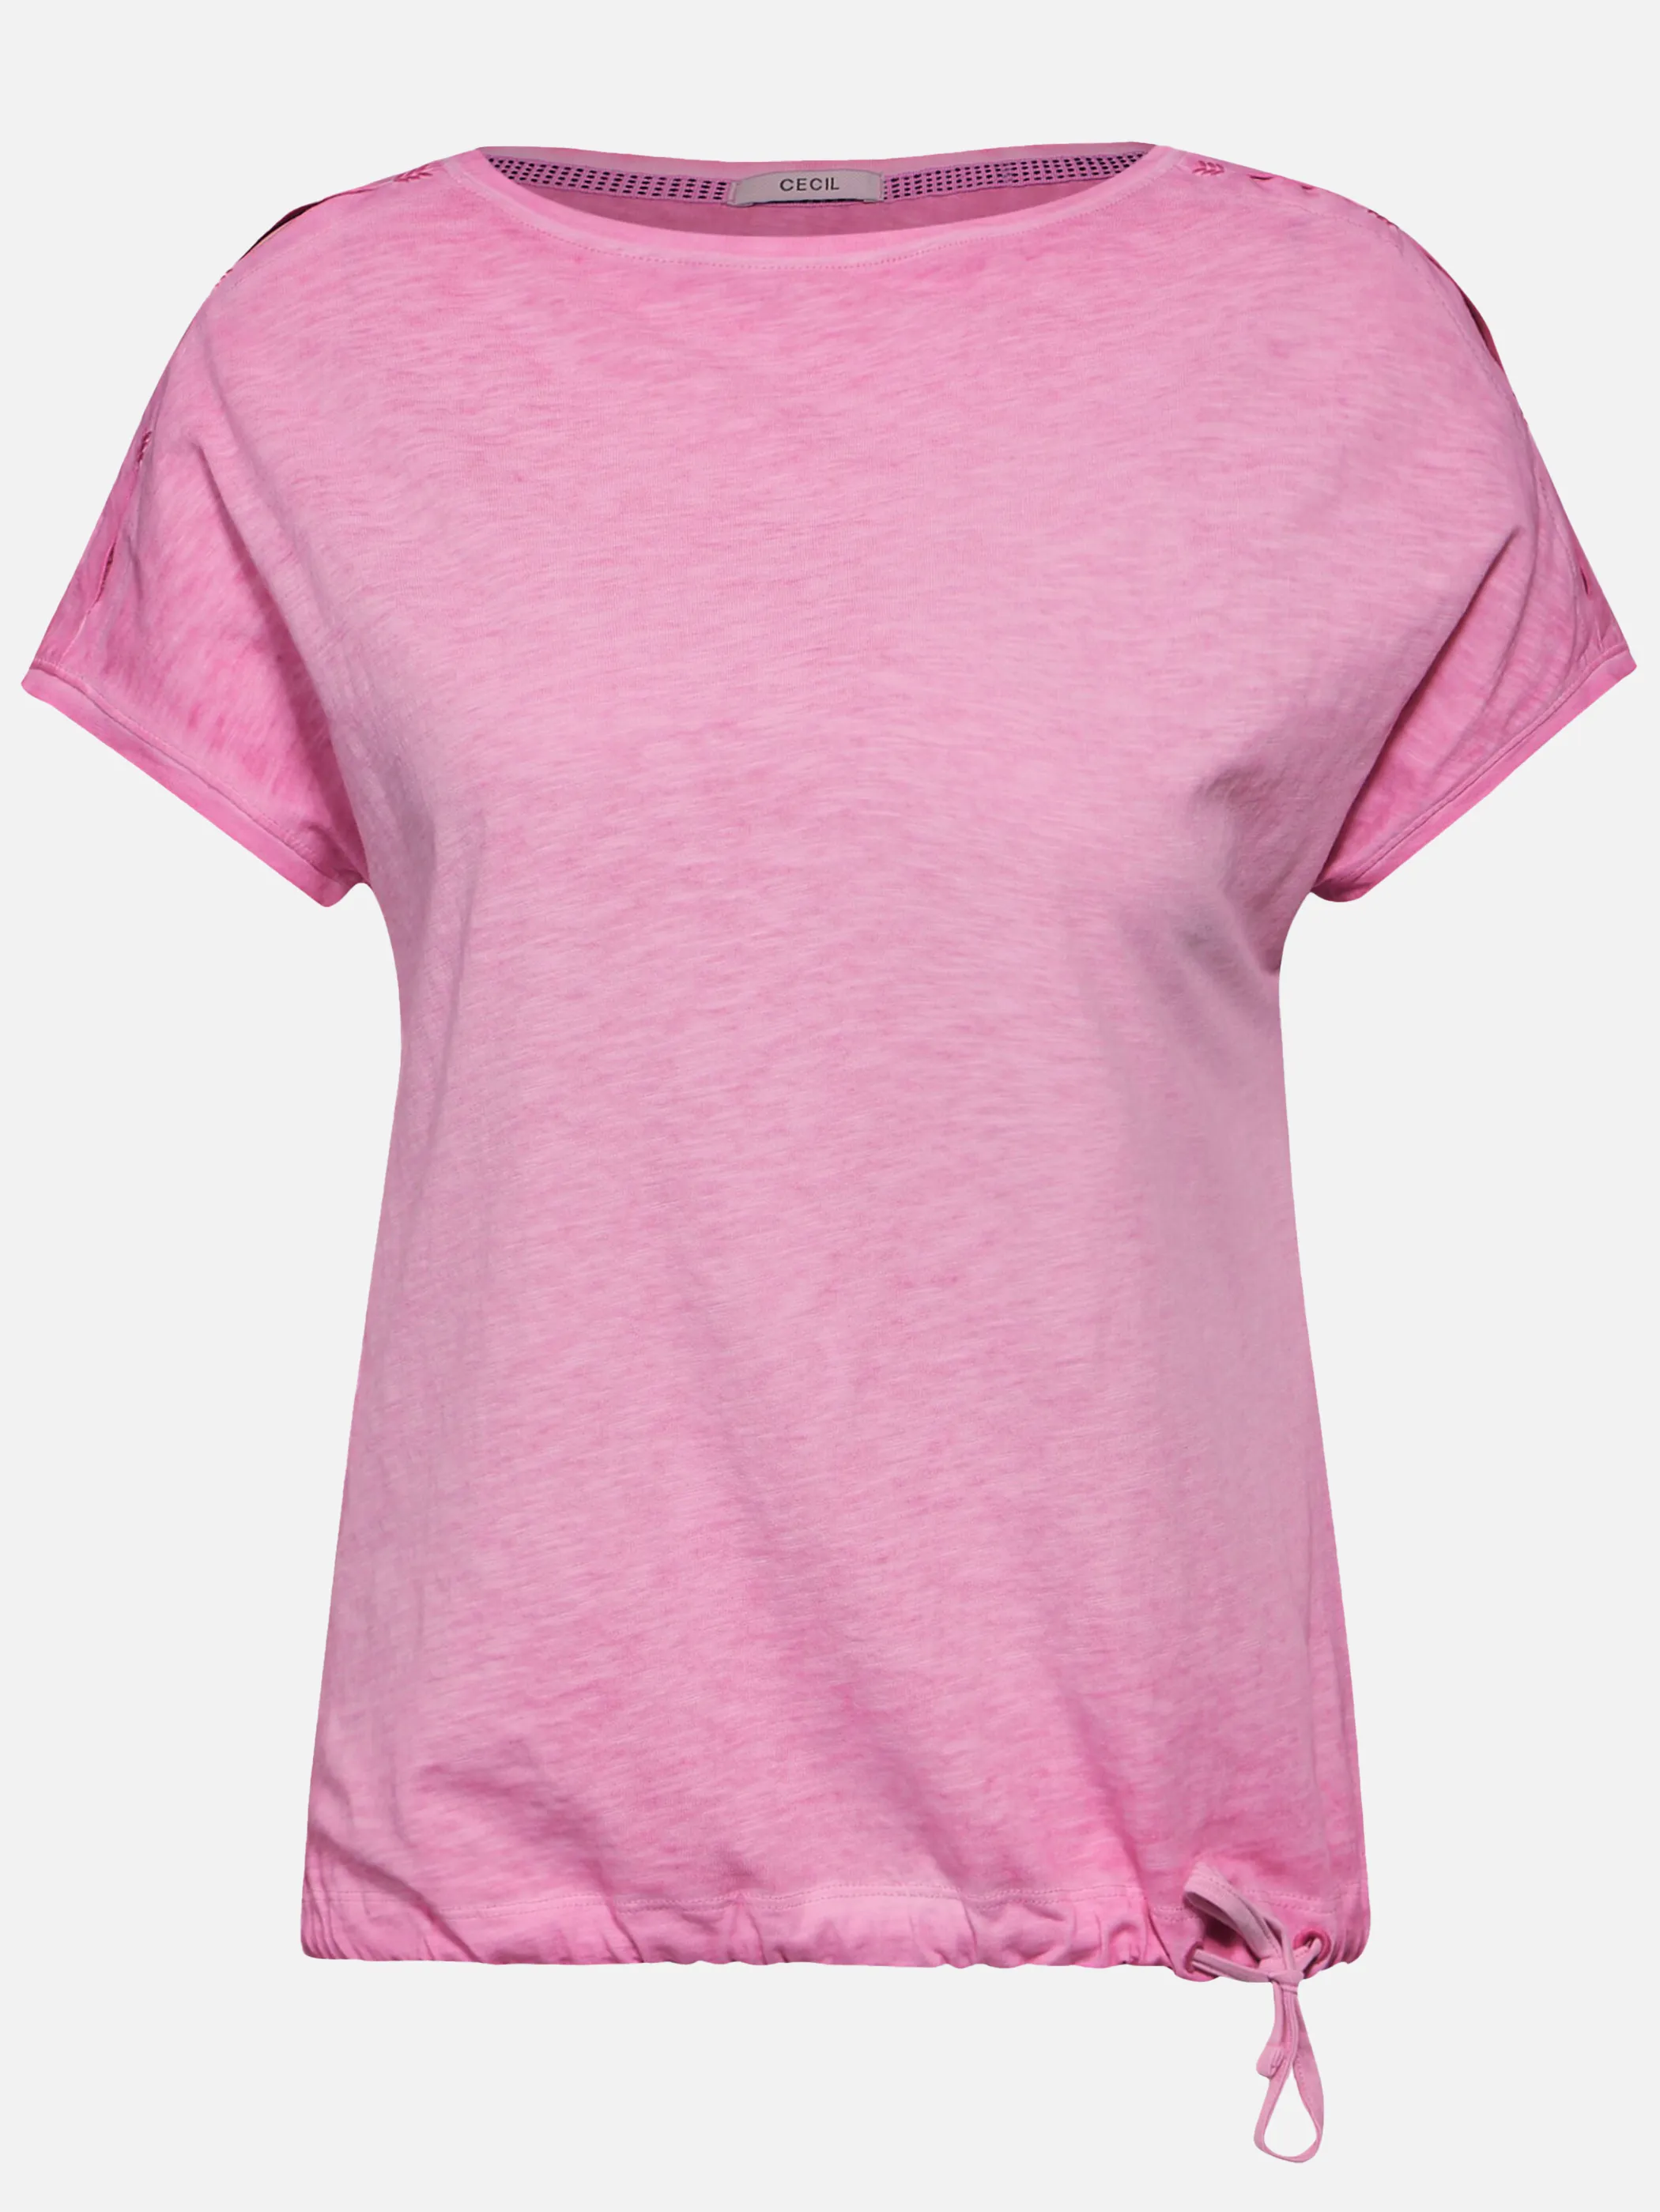 Cecil B321509 NOS GMD Shirt Pink 898433 15369 1